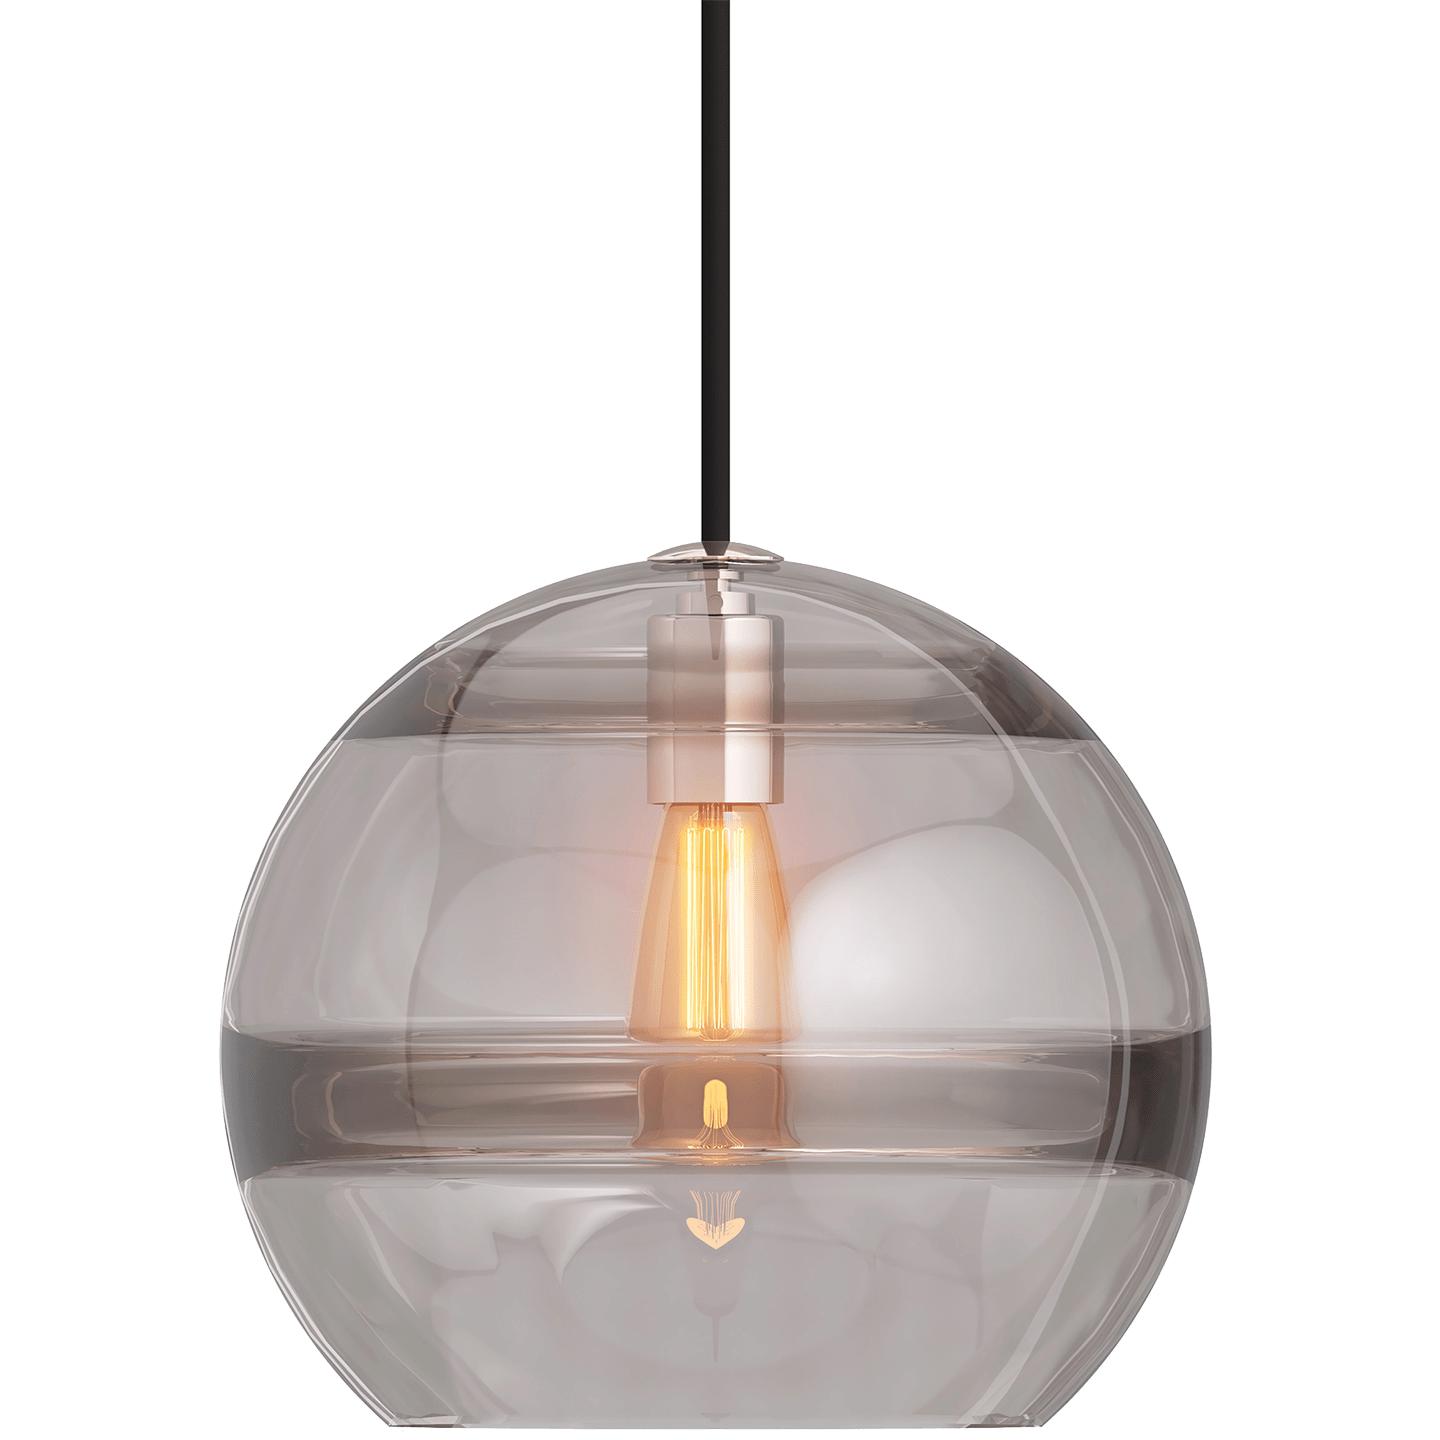 Купить Подвесной светильник Sedona Large Pendant в интернет-магазине roooms.ru